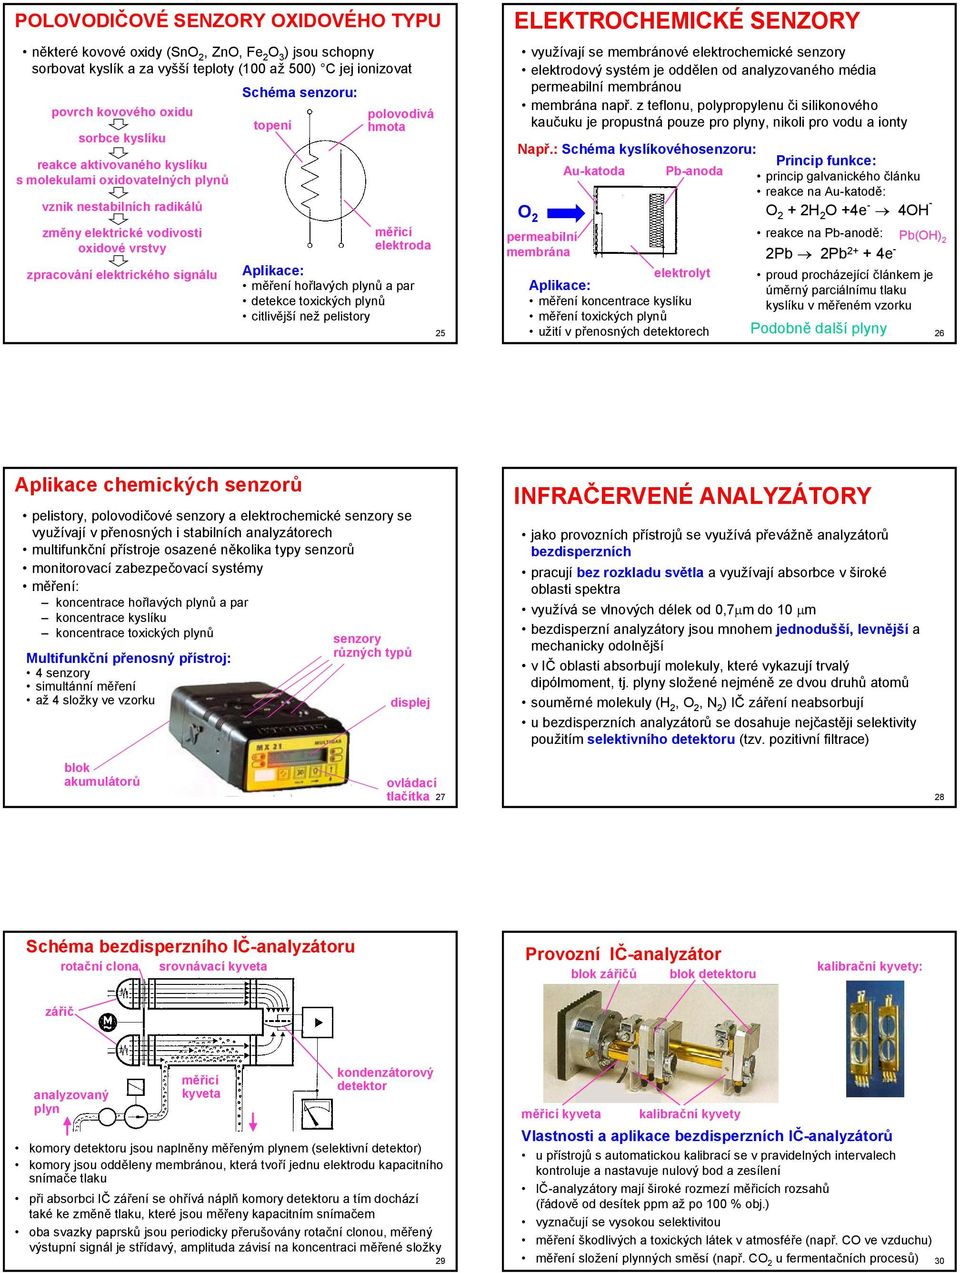 elektroda Aplikace: měření hořlavých plynů a par detekce toxických plynů citlivější než pelistory 5 ELEKTOCHEMICKÉ SENZOY využívají se membránové elektrochemické senzory elektrodový systém je oddělen